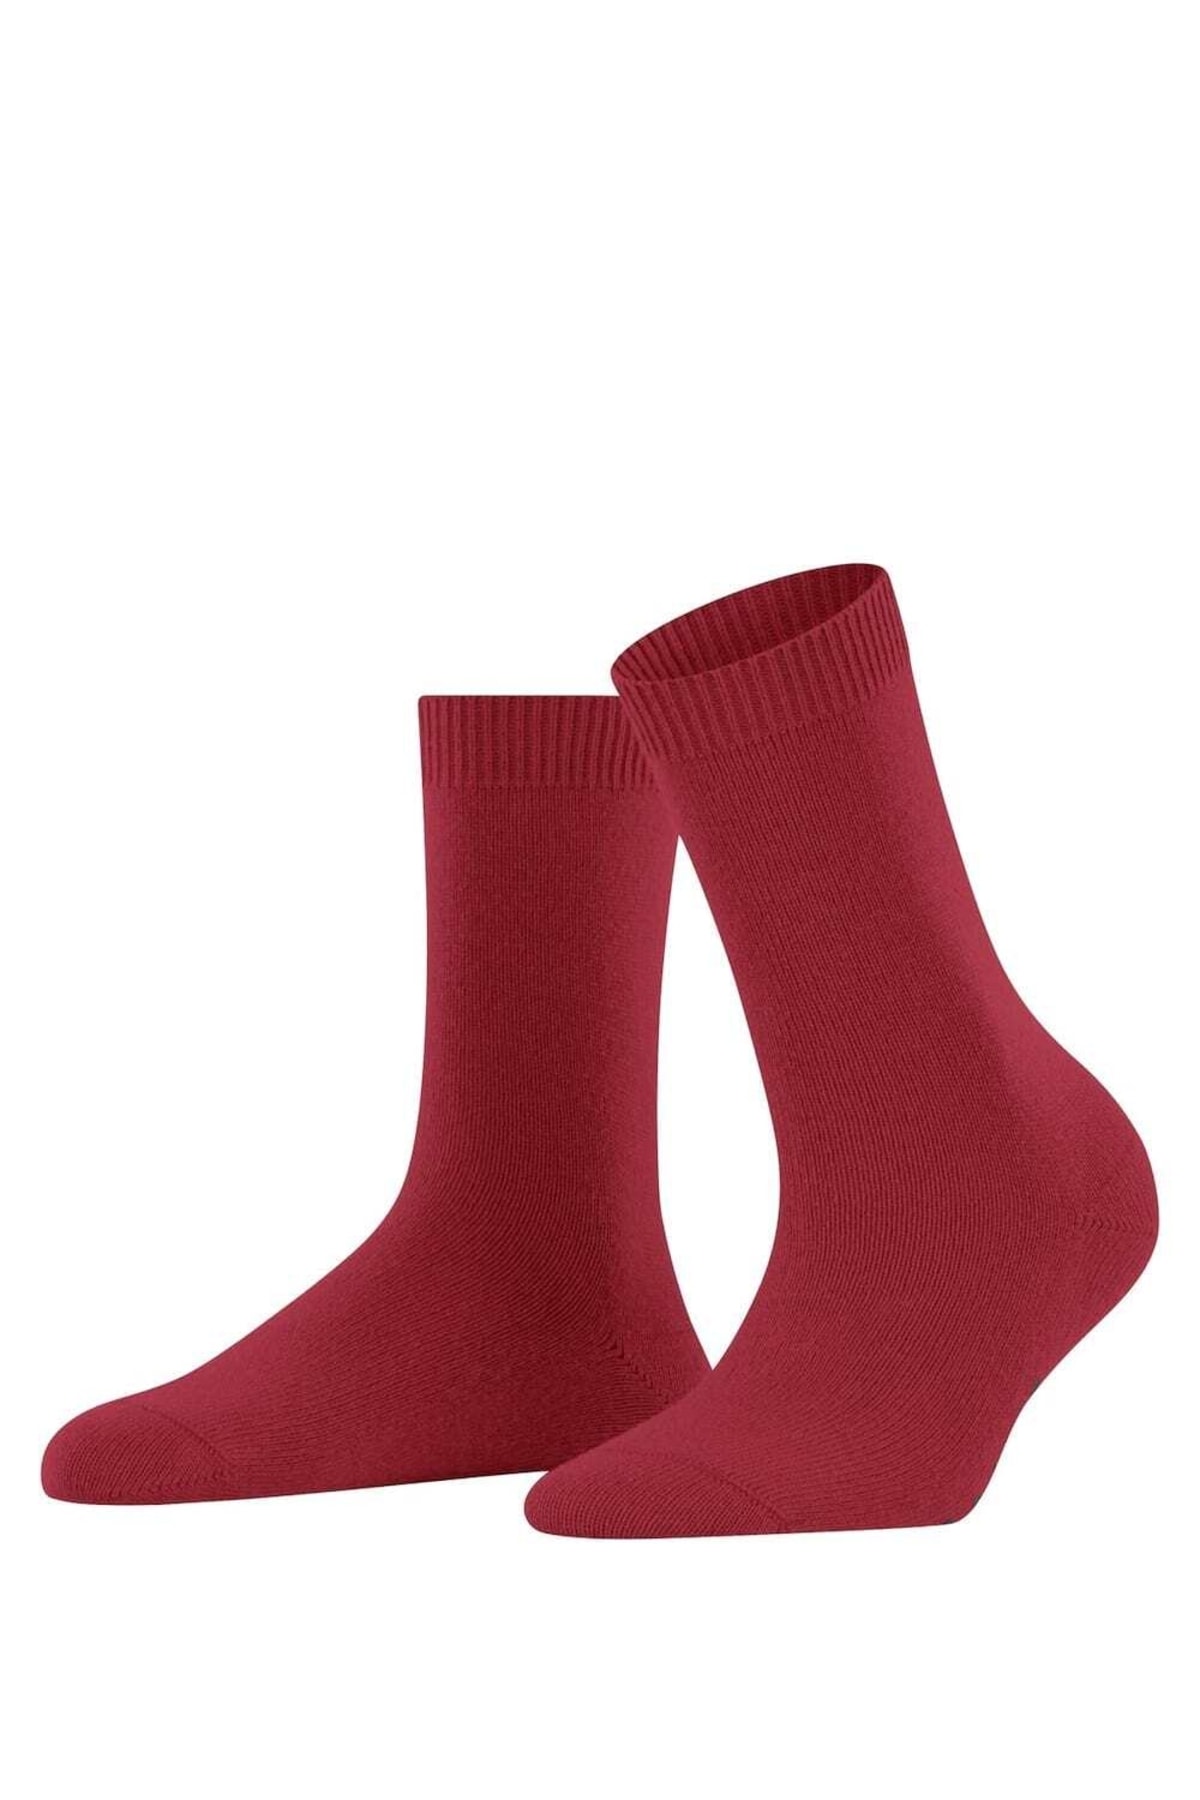 FALKE Socken Rot Unifarben